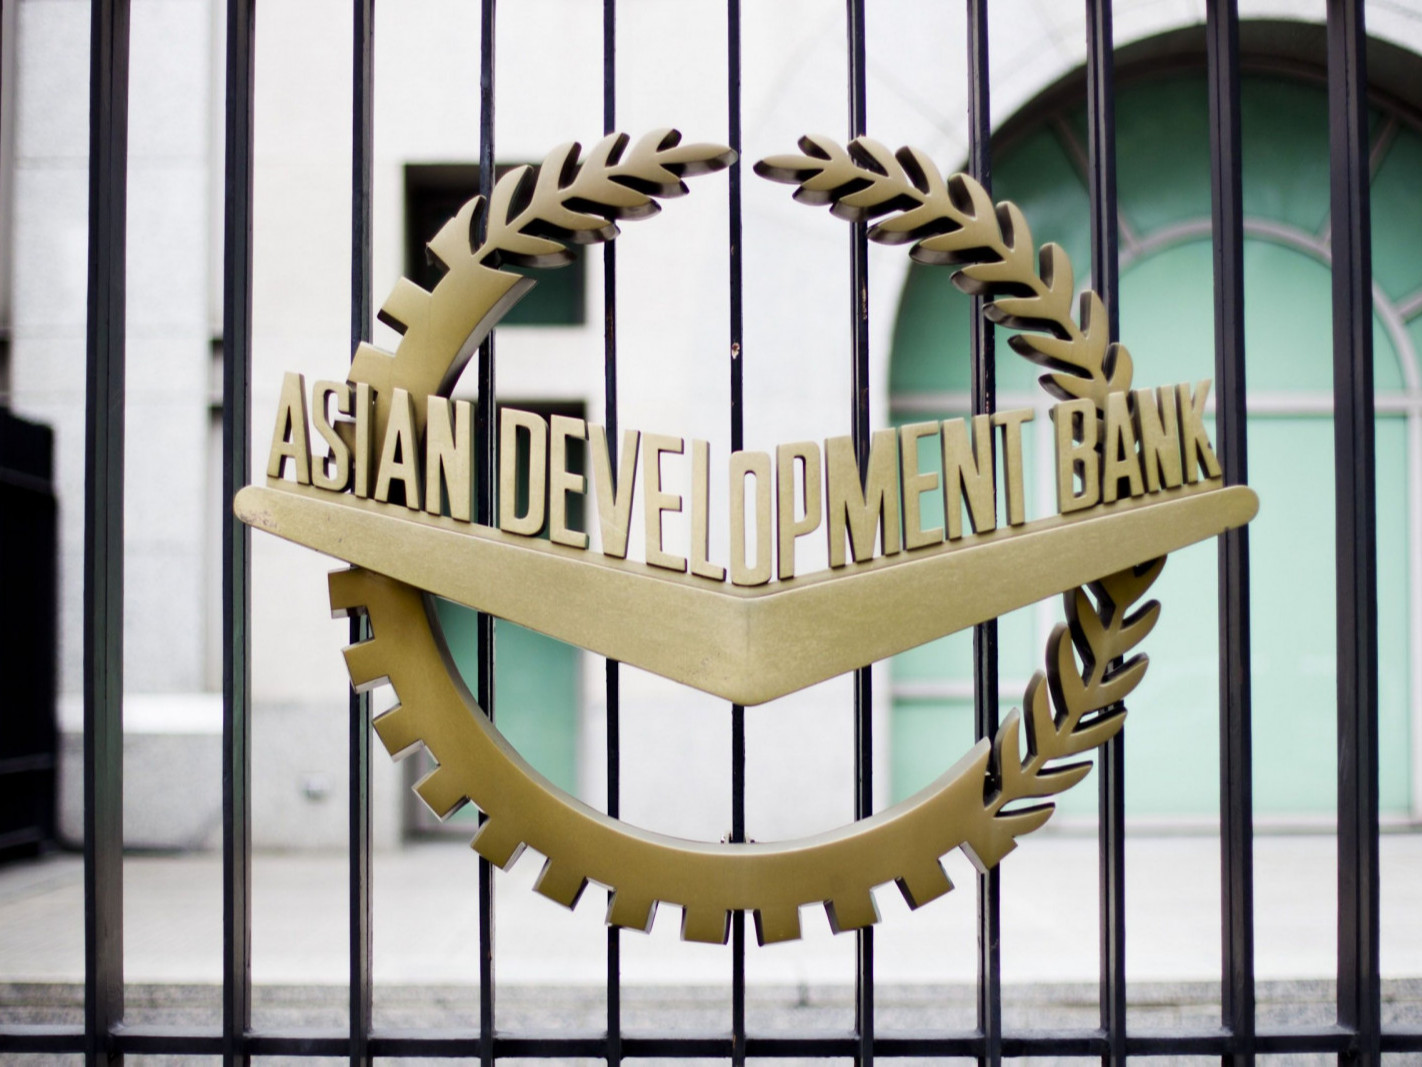 Азийн хөгжлийн банк Улаанбаатар хотын ногоон хөгжлийн төсөлд 570 сая ам.долларын хөрөнгө оруулалт хийнэ гэв